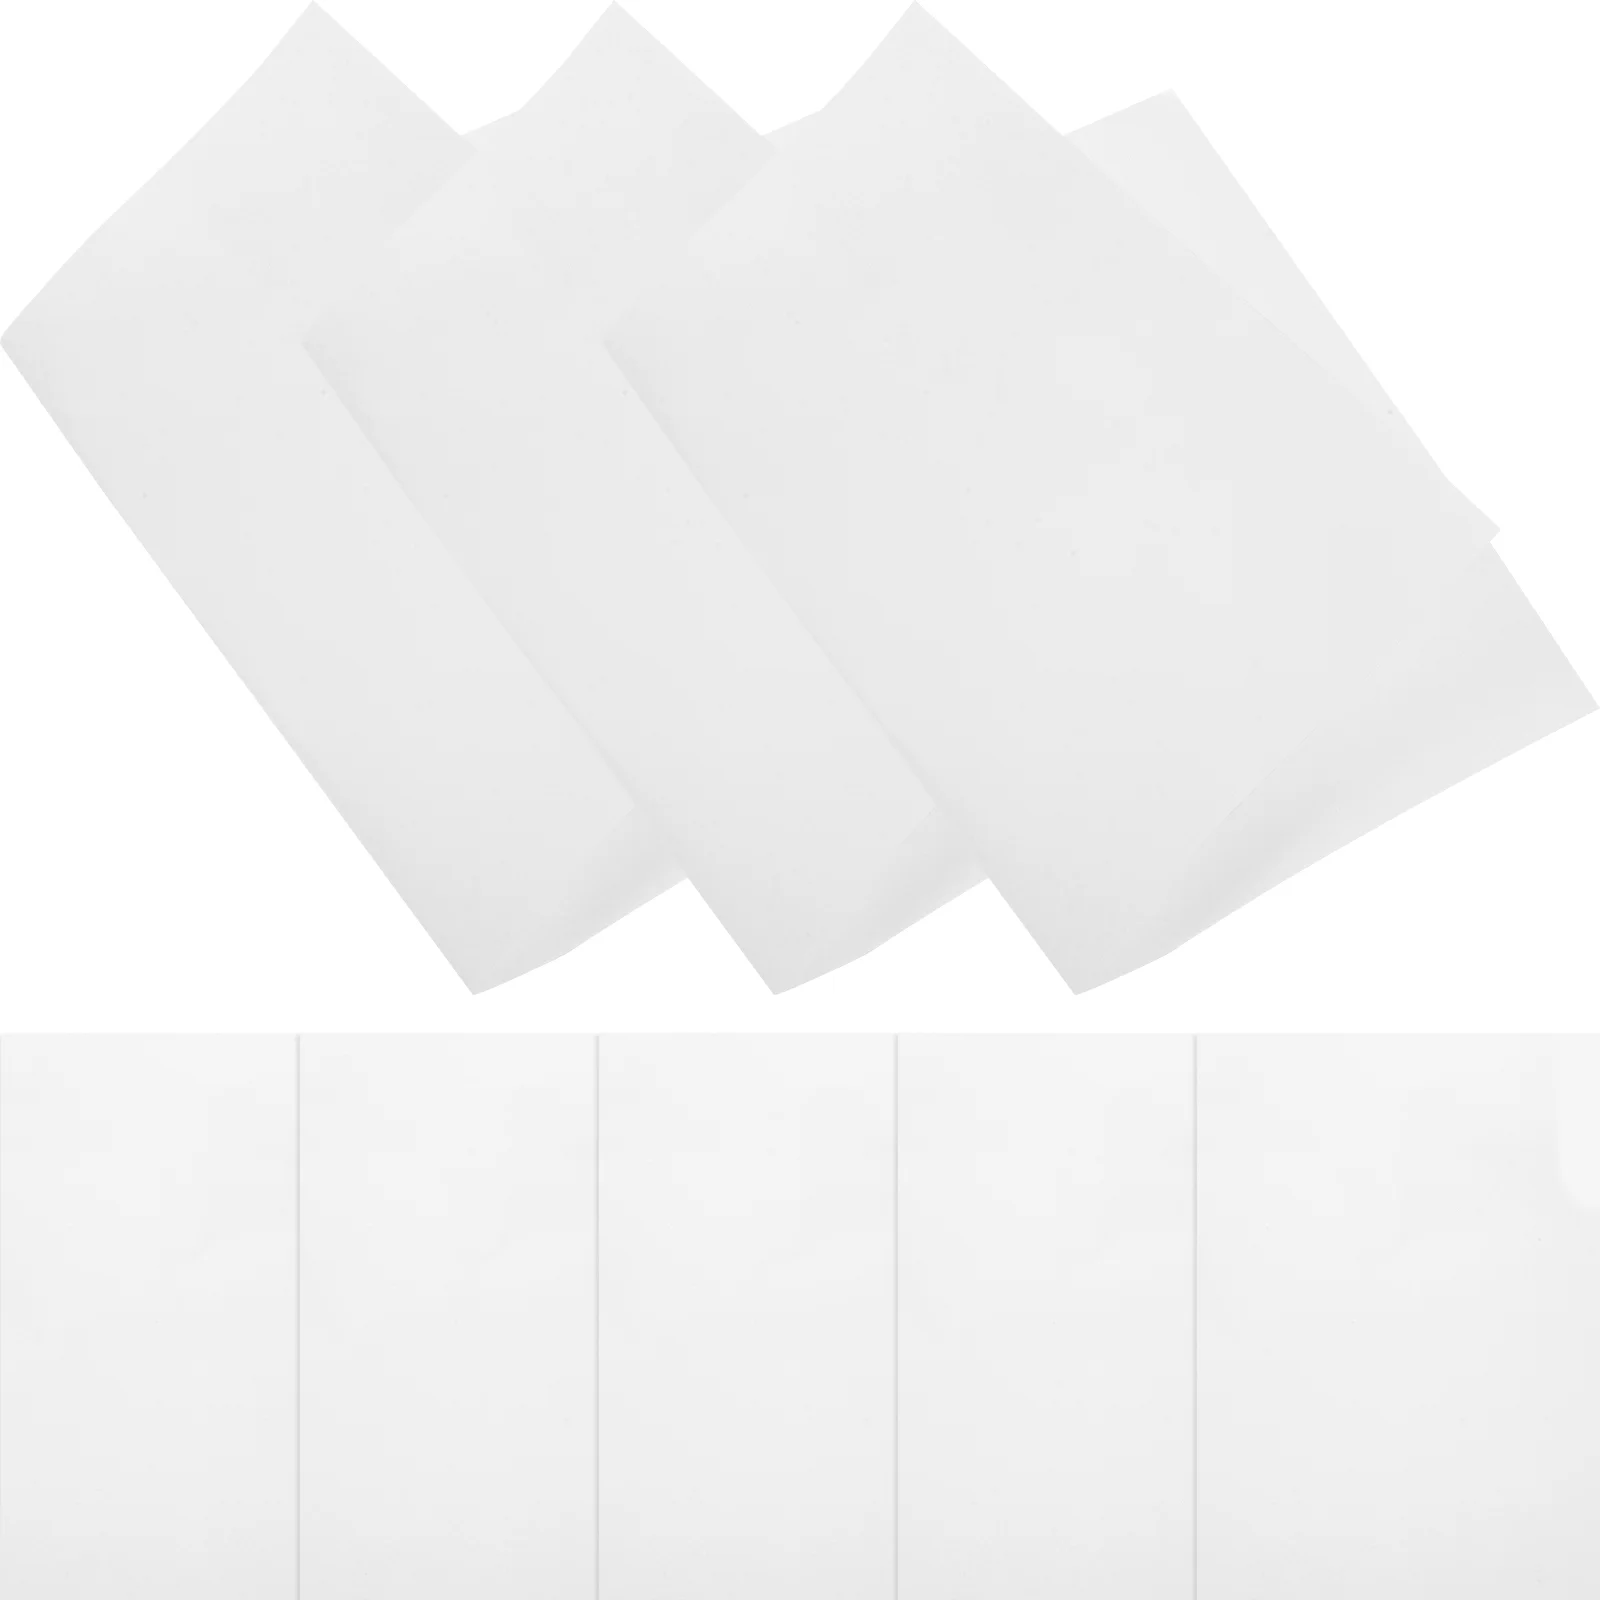 Sublimação impressão papel, 20pcs, a4 tamanho, cor branca